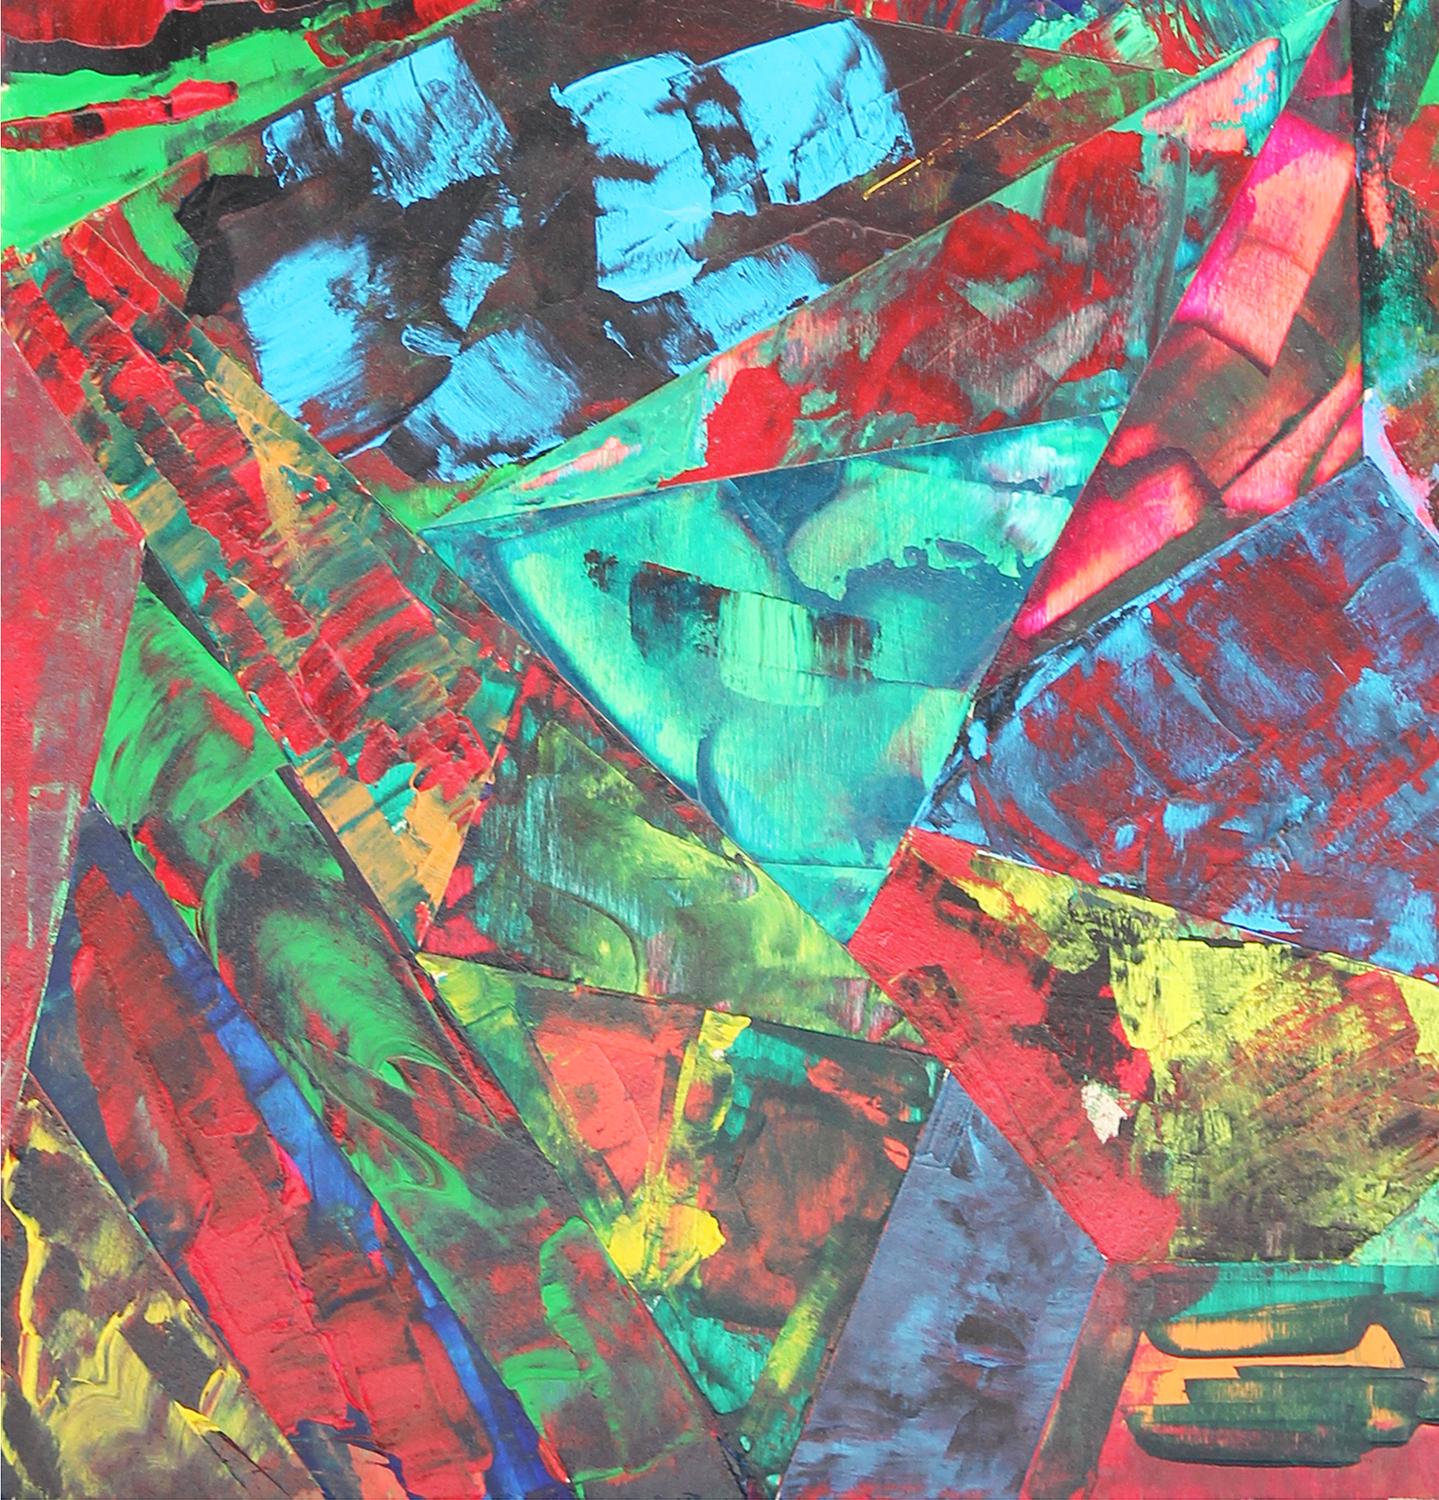 Abstraktes geometrisches Gemälde in Türkis, Rot, Grün, Gelb und Rosa von Paul Reeves, Inhaber von Reeves Art + Design und Künstler aus Houston, TX. Dieses Gemälde zeigt lebendige, farbige Formen, die an ein Kaleidoskop erinnern. Signiert und datiert